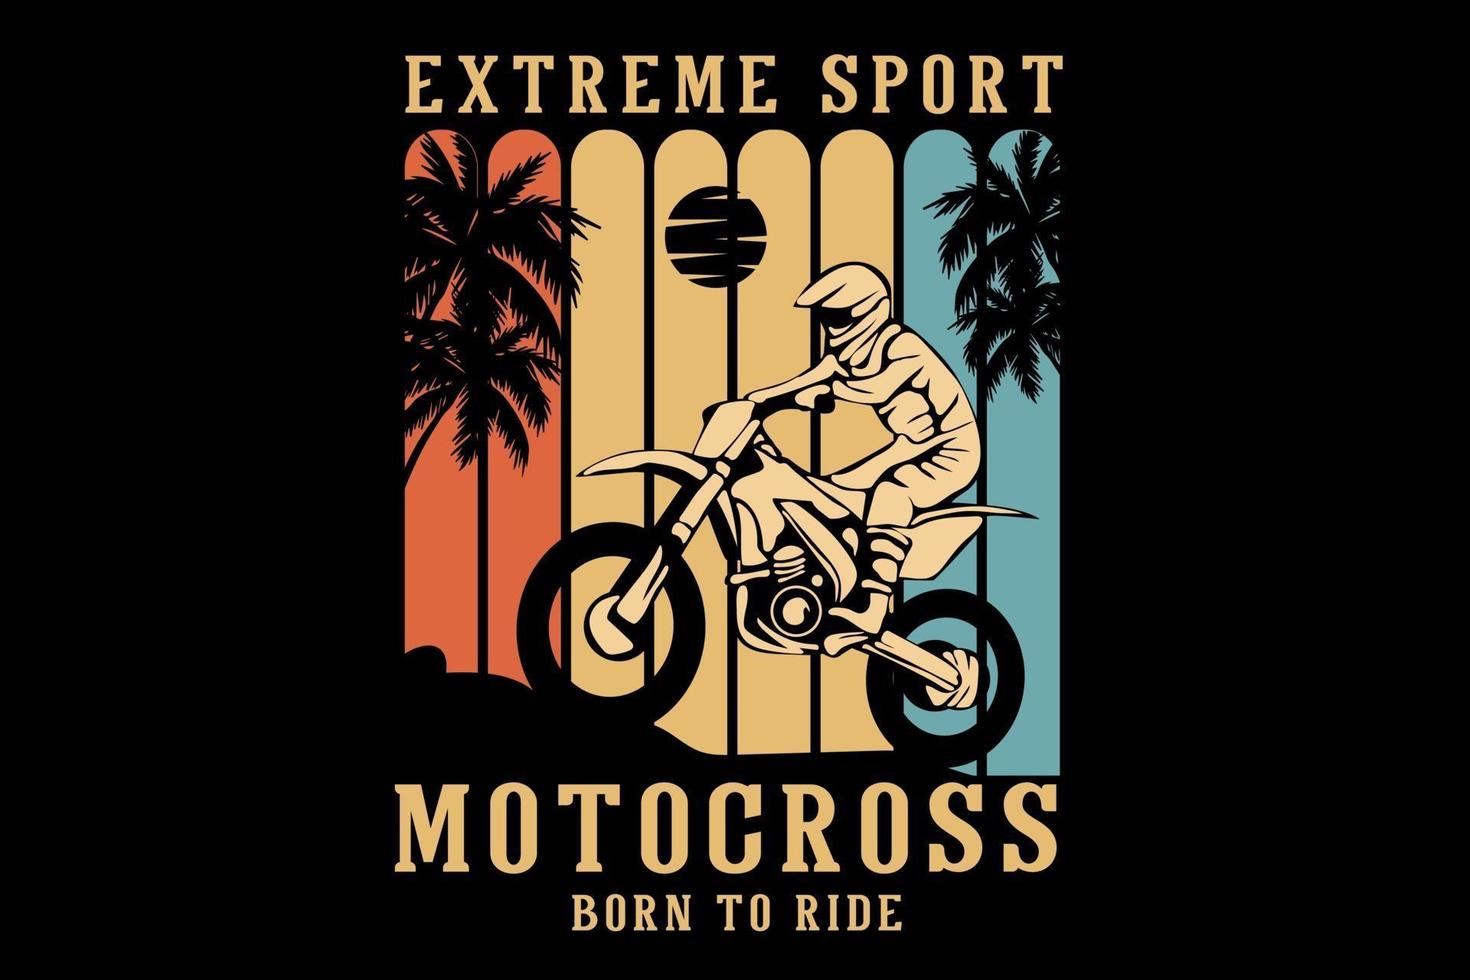 conception de silhouette de motocross de sport extrême vecteur